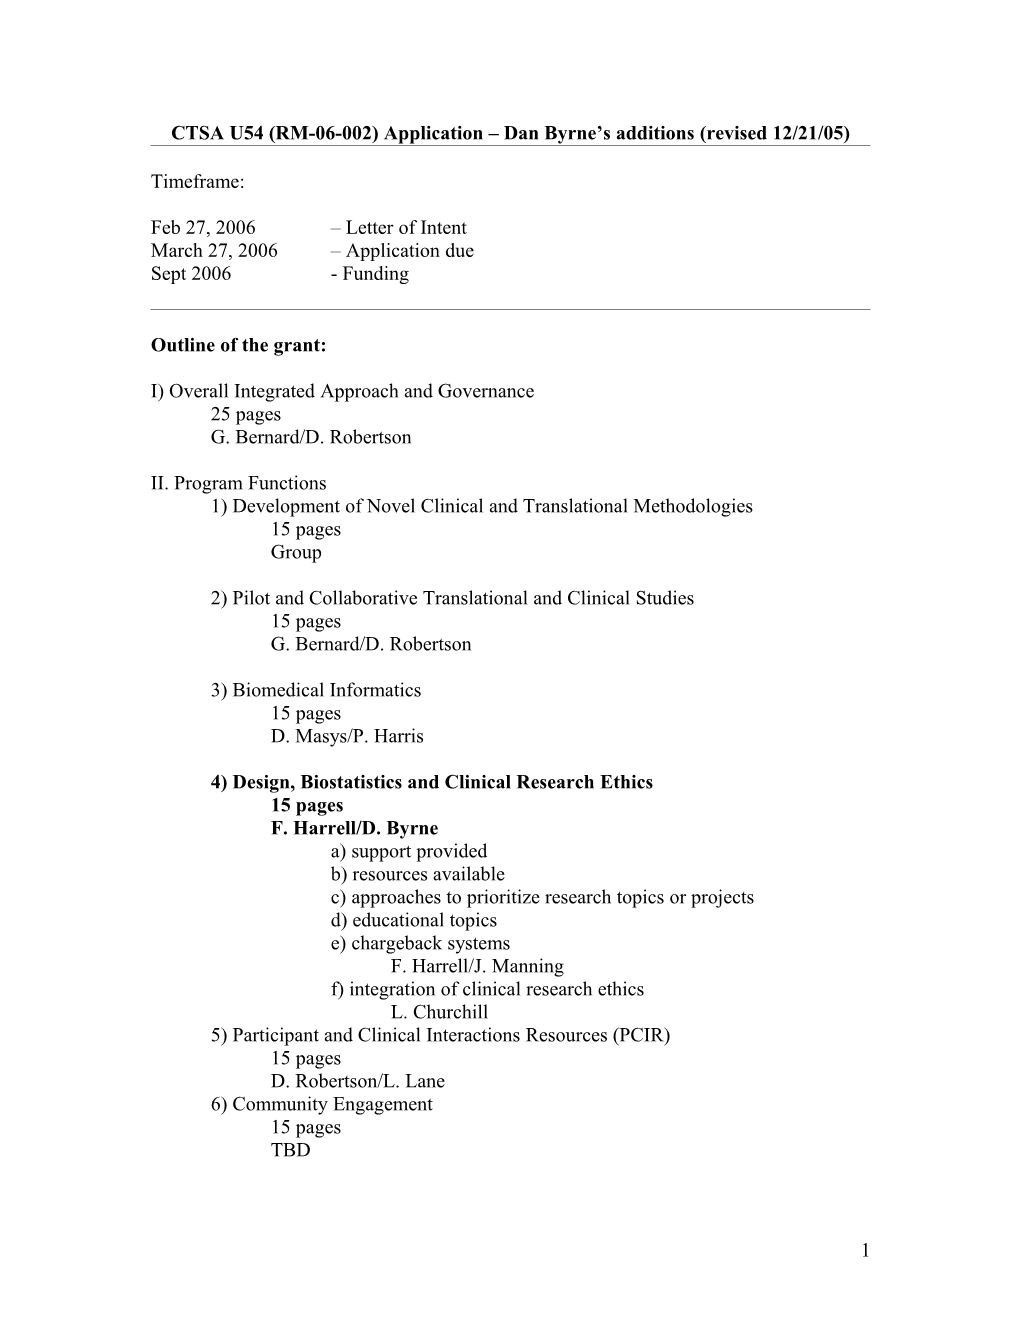 CTSA U54 (RM-06-002) Application Dan Byrne S Additions (Revised 12/21/05)